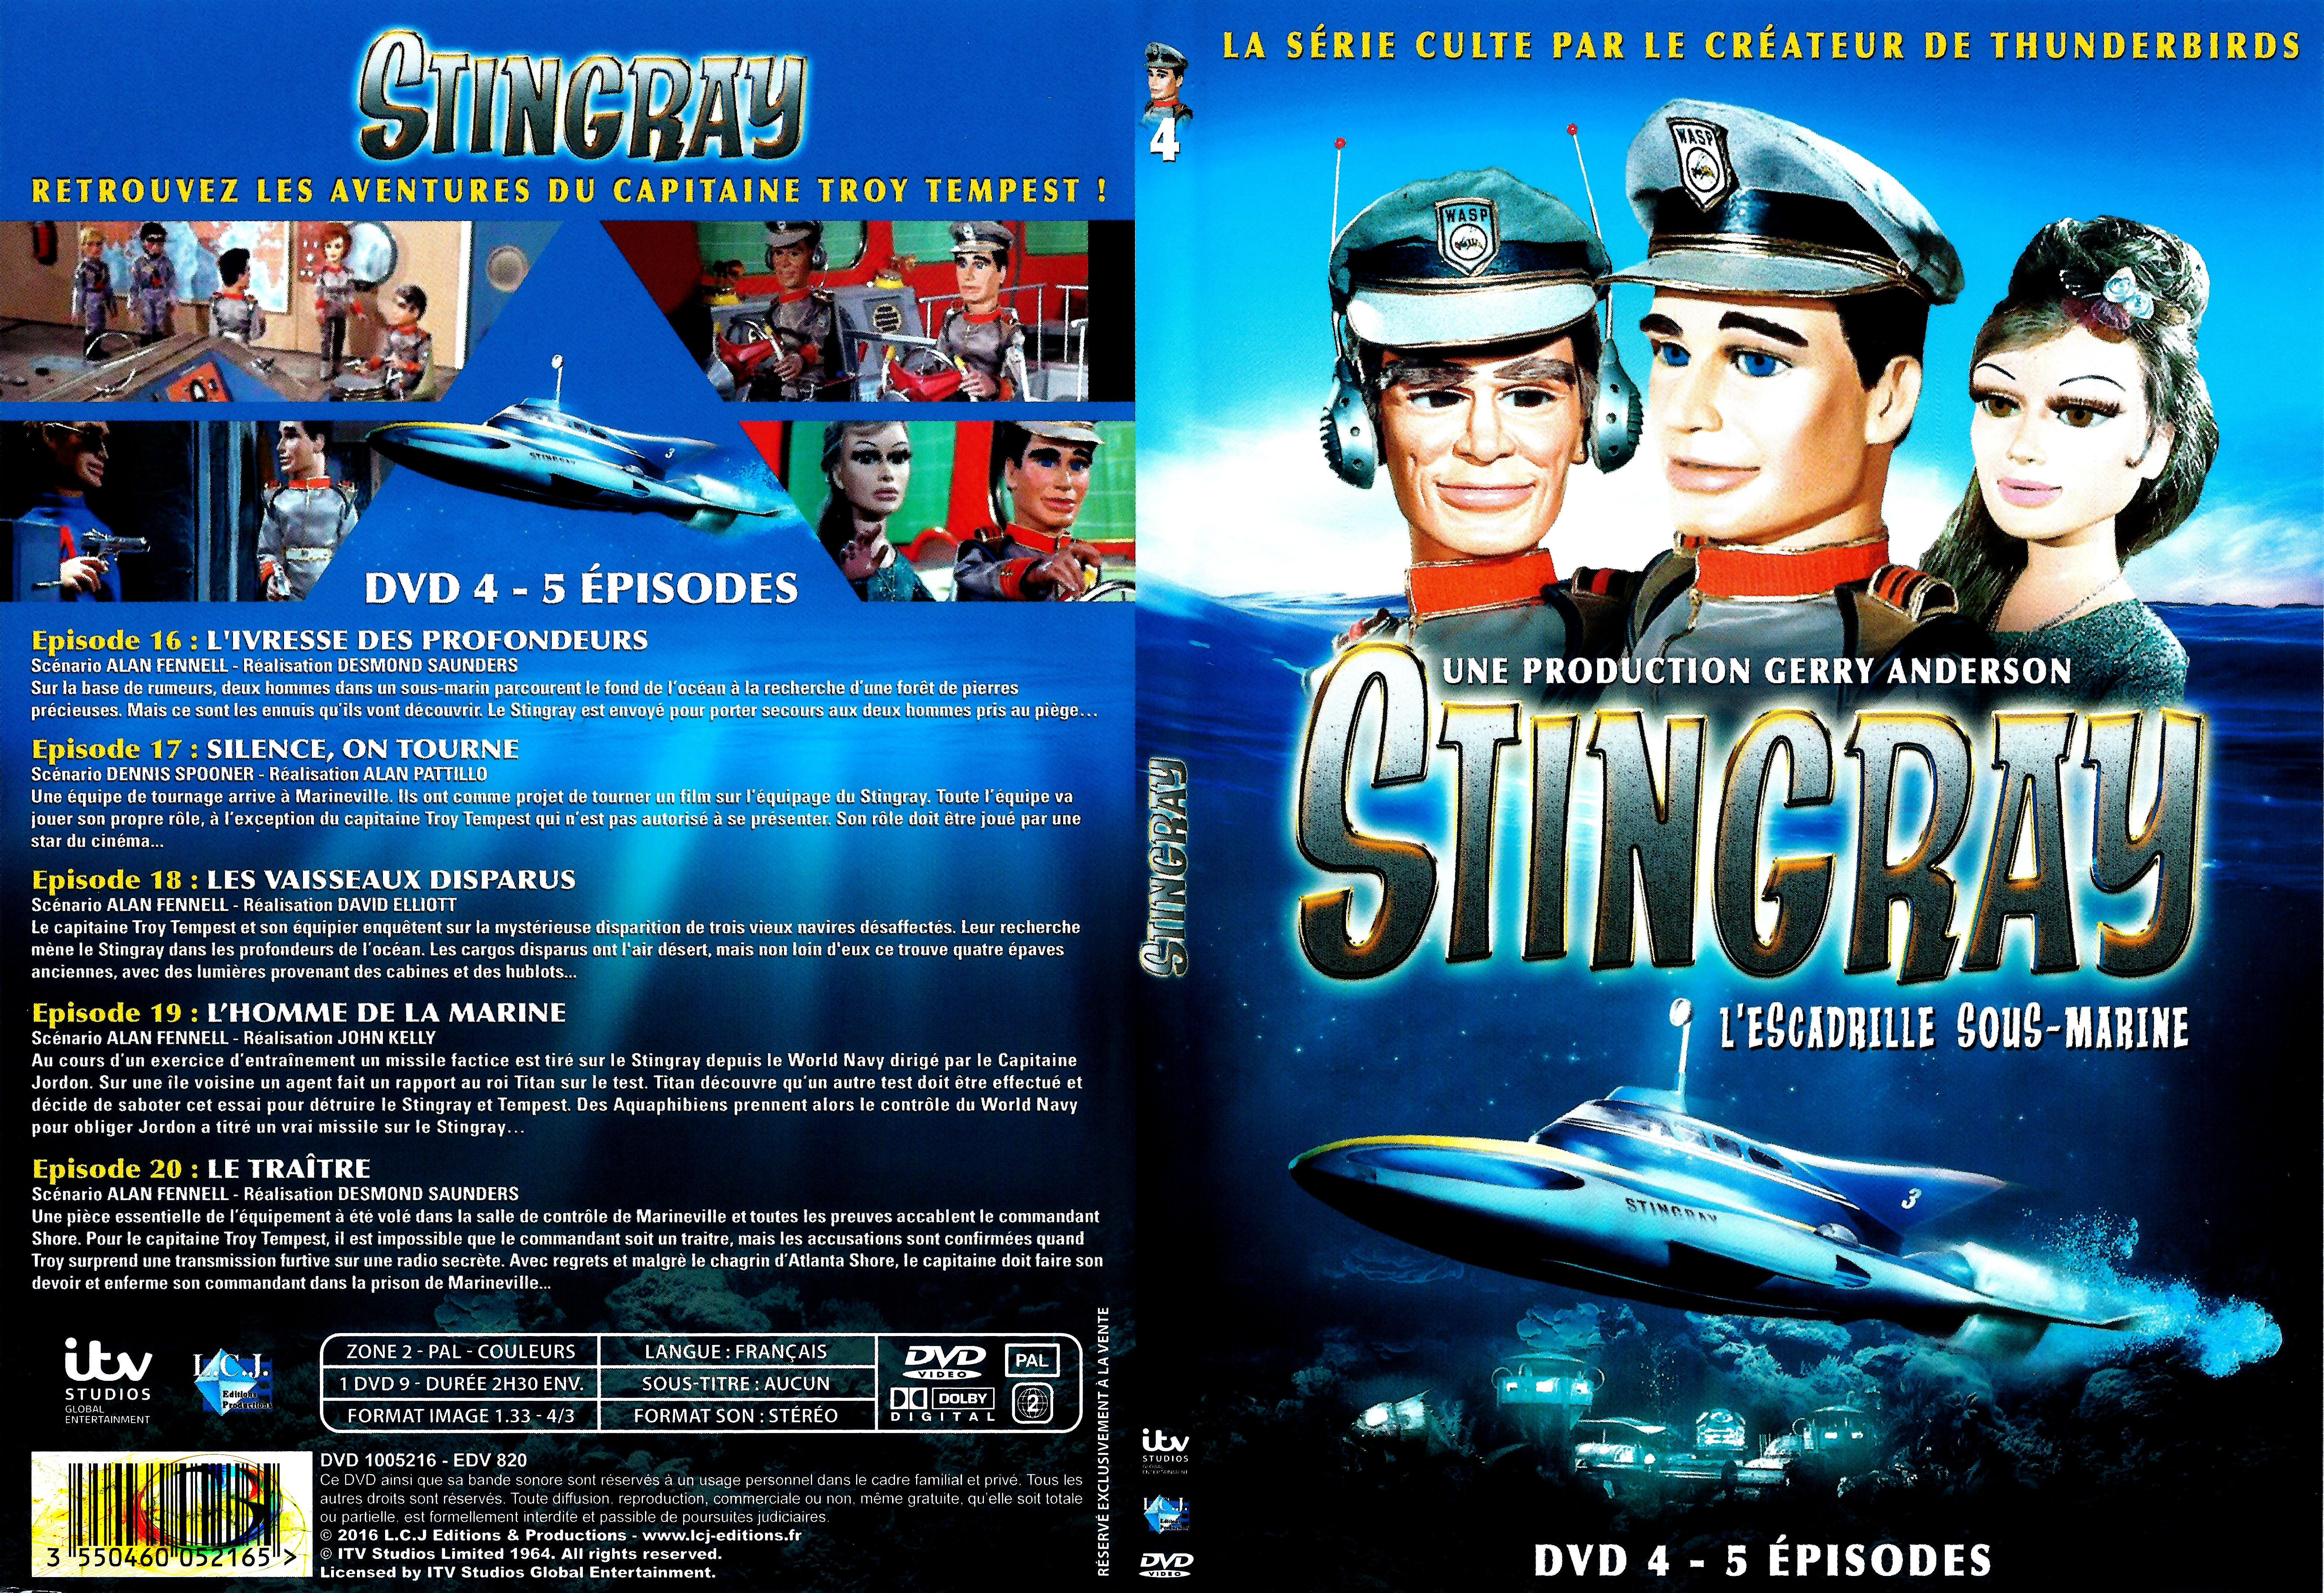 Jaquette DVD Stingray Saison 1 DVD 4